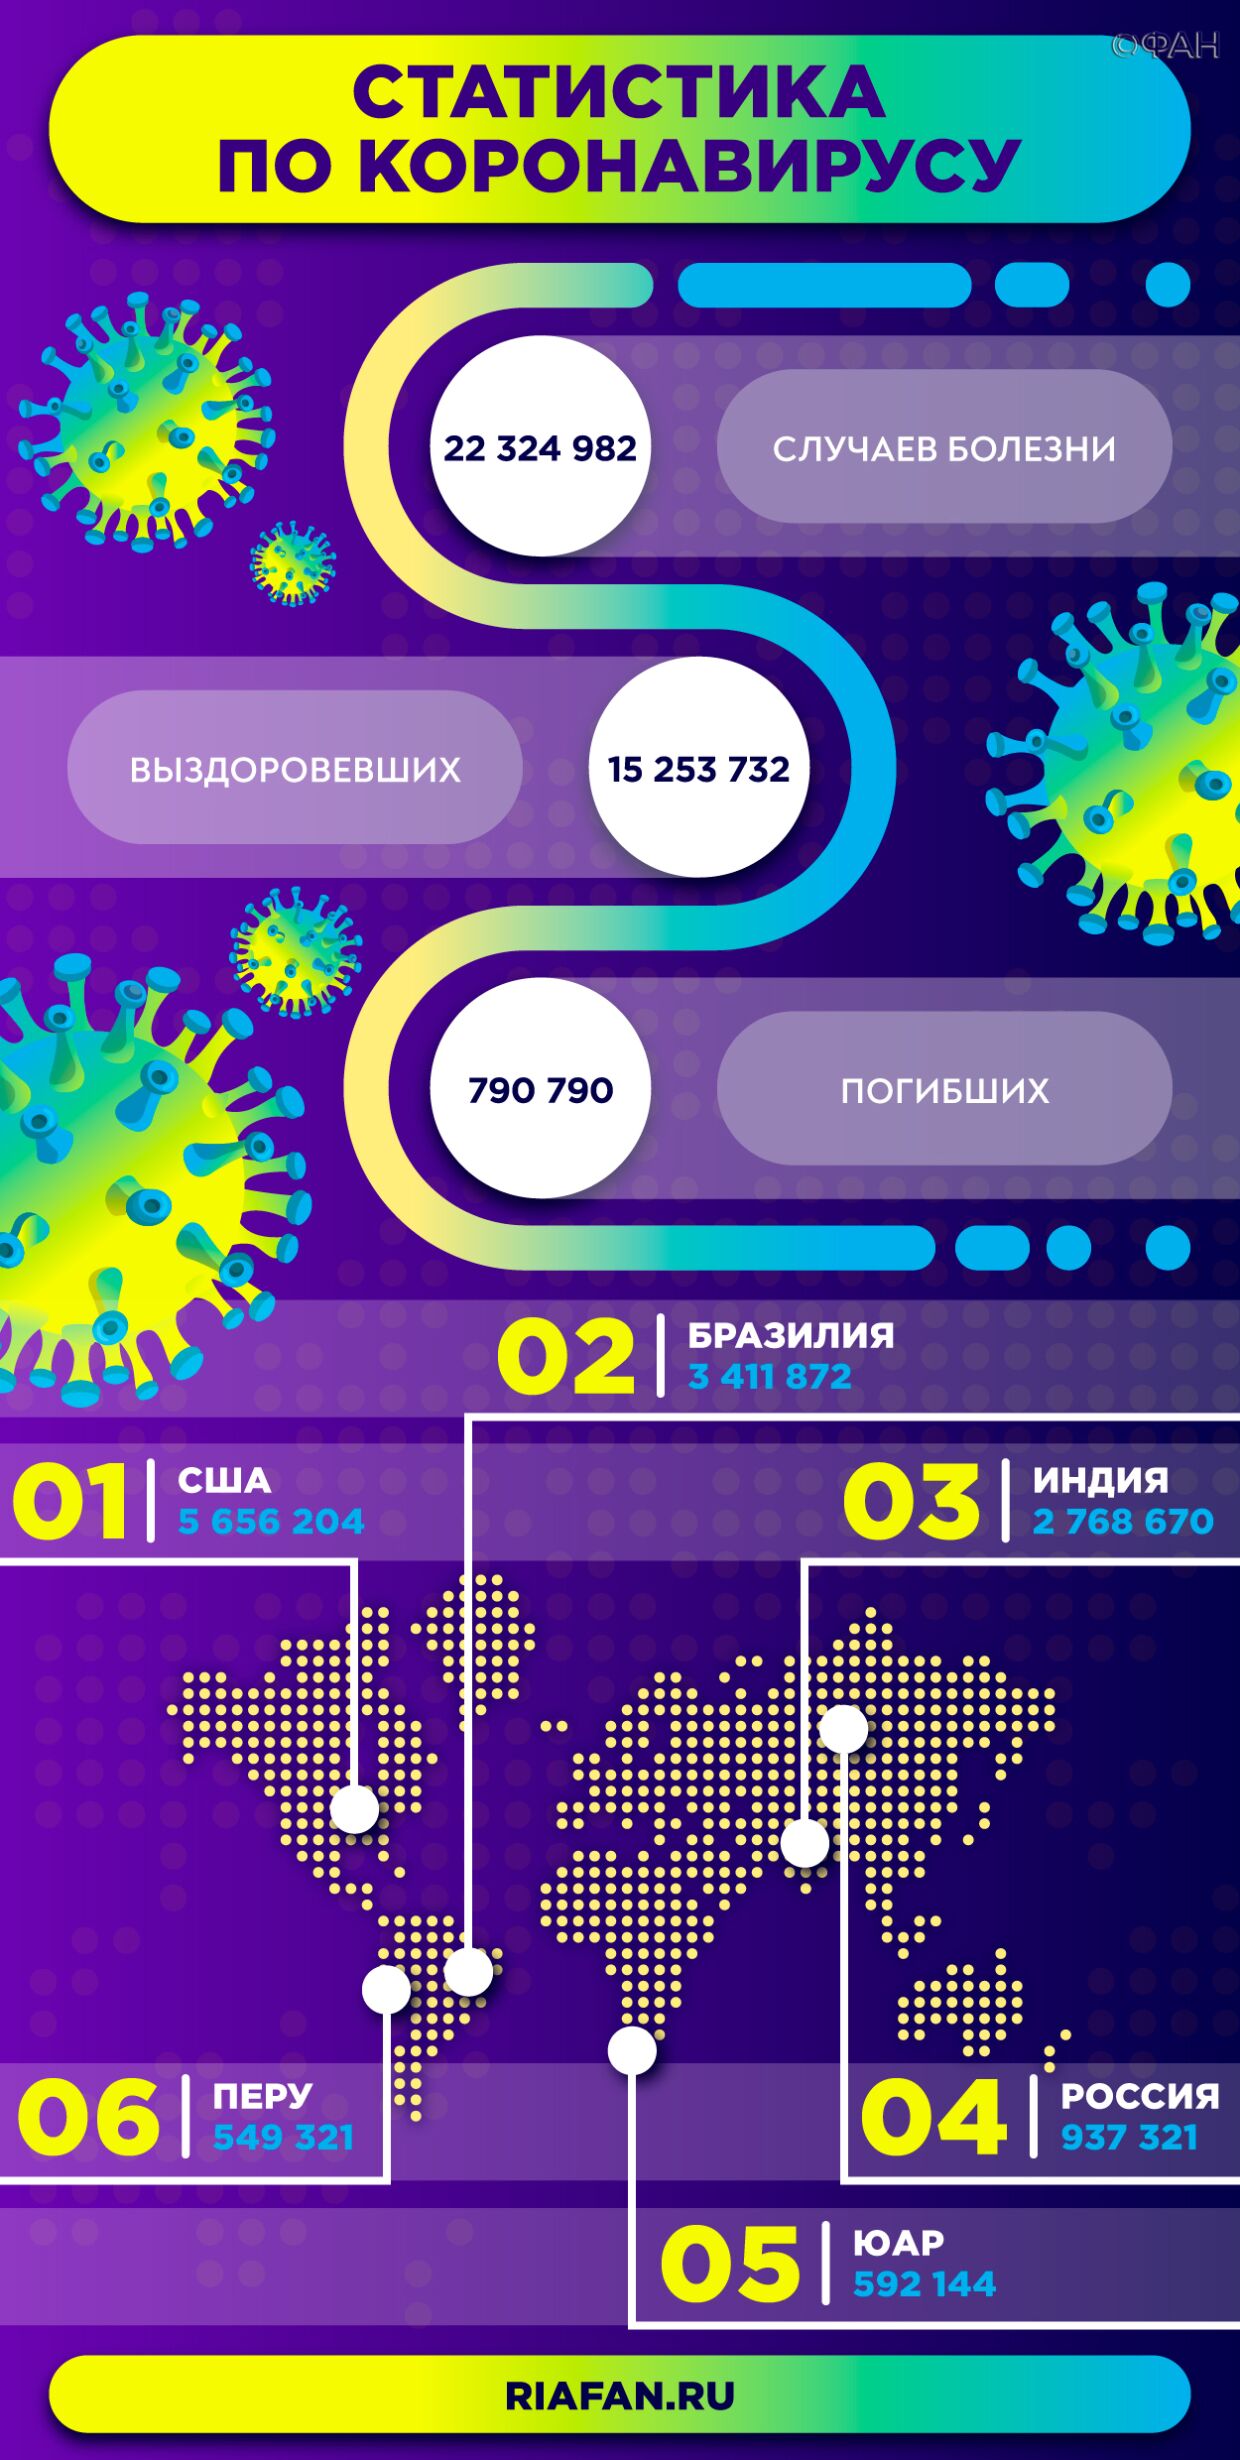 Ученый рассказал о принципе действия российской вакцины против коронавируса